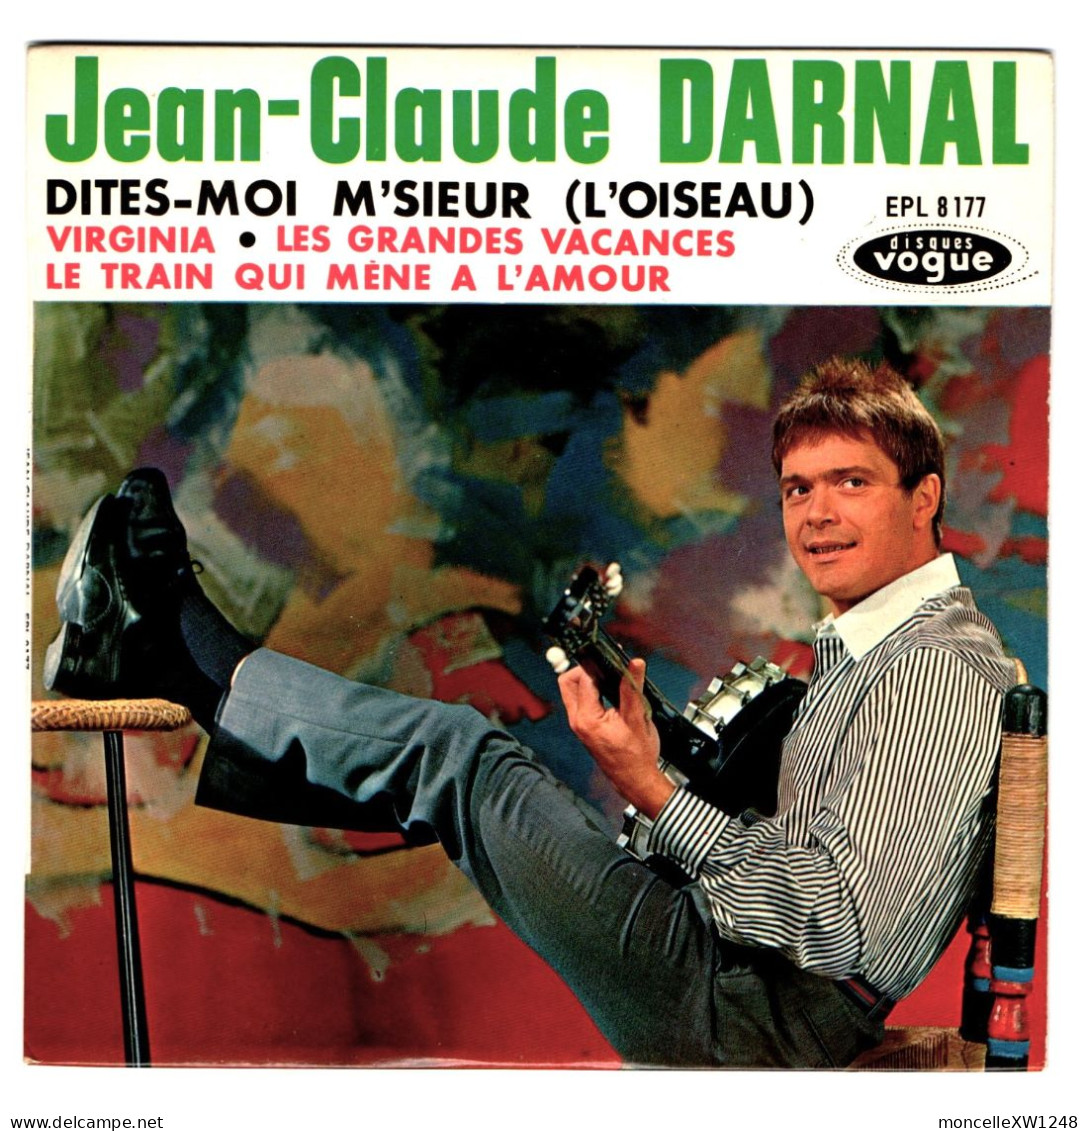 Jean-Claude Darnal - 45 T EP Dites-moi M'sieur (1963) - 45 G - Maxi-Single